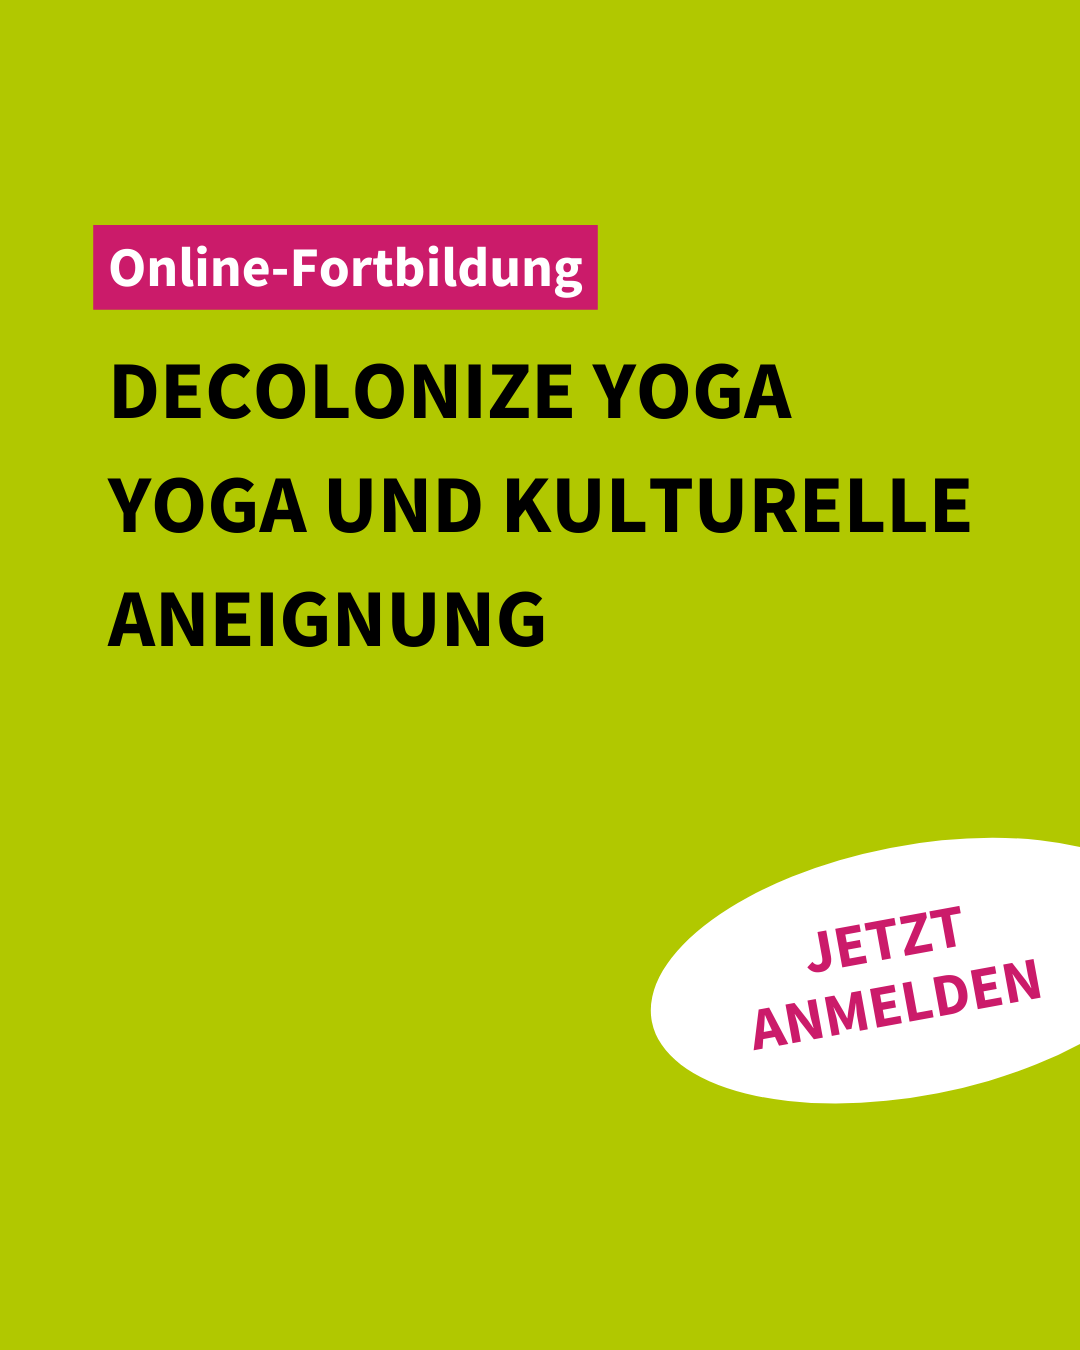 Online-Fortbildung | Decolonize Yoga – Yoga und kulturelle Aneignung